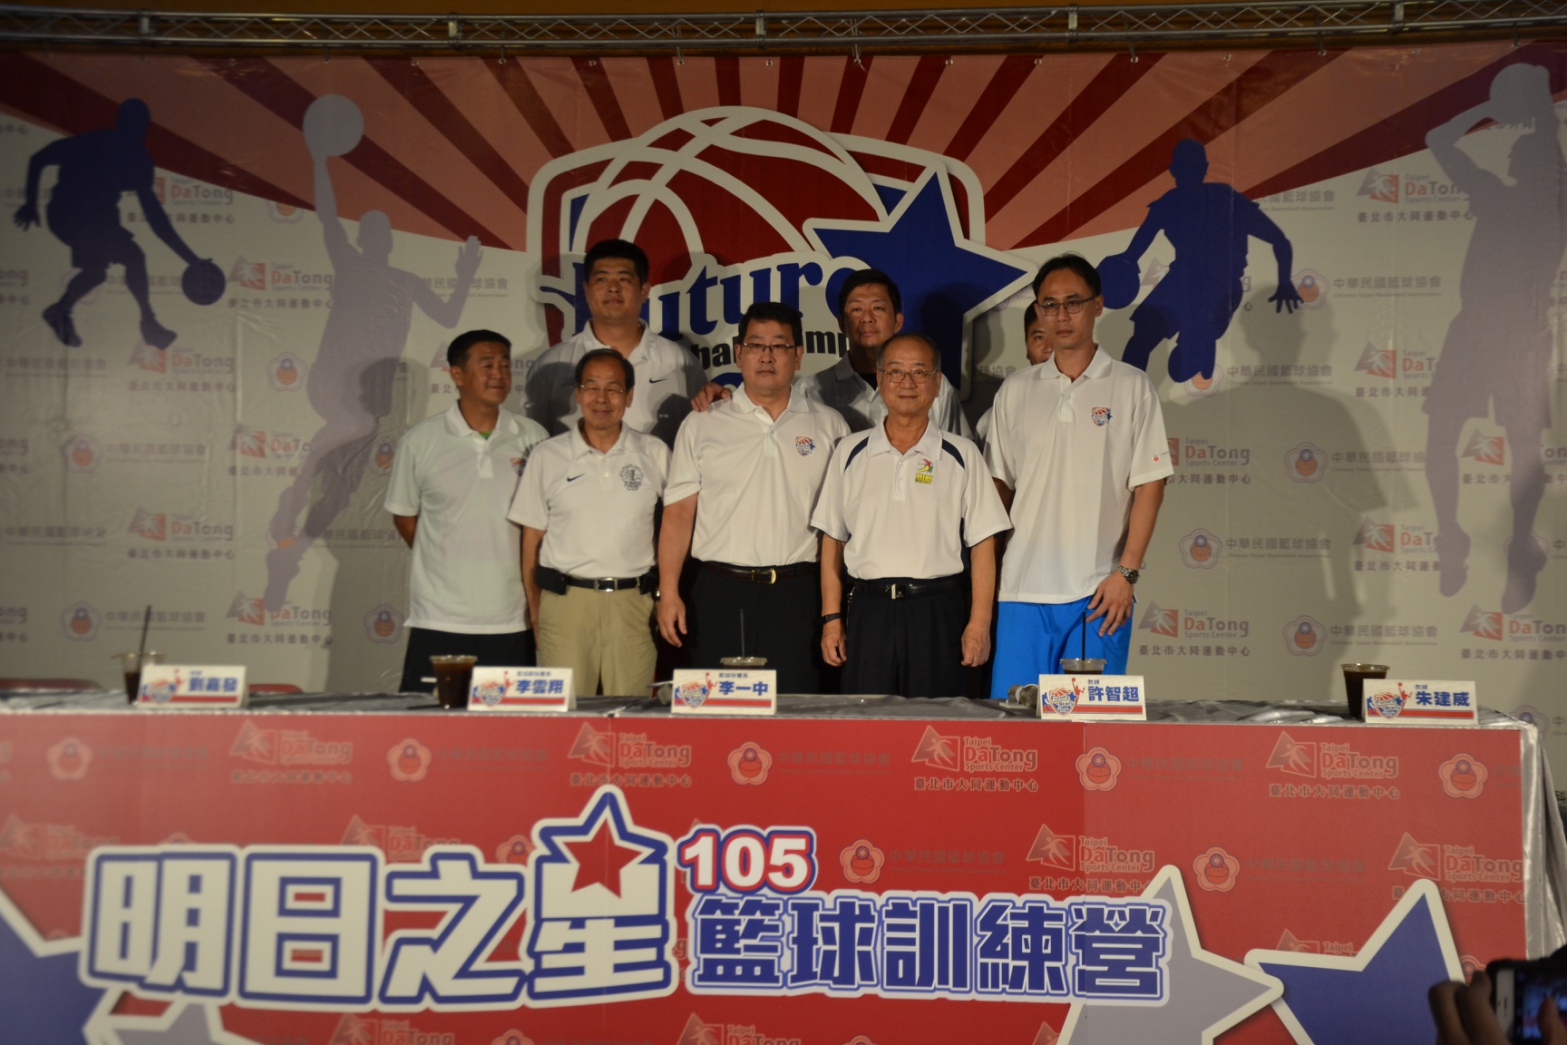 明日之星籃球訓練營招生中。圖/中華民國籃球協會提供